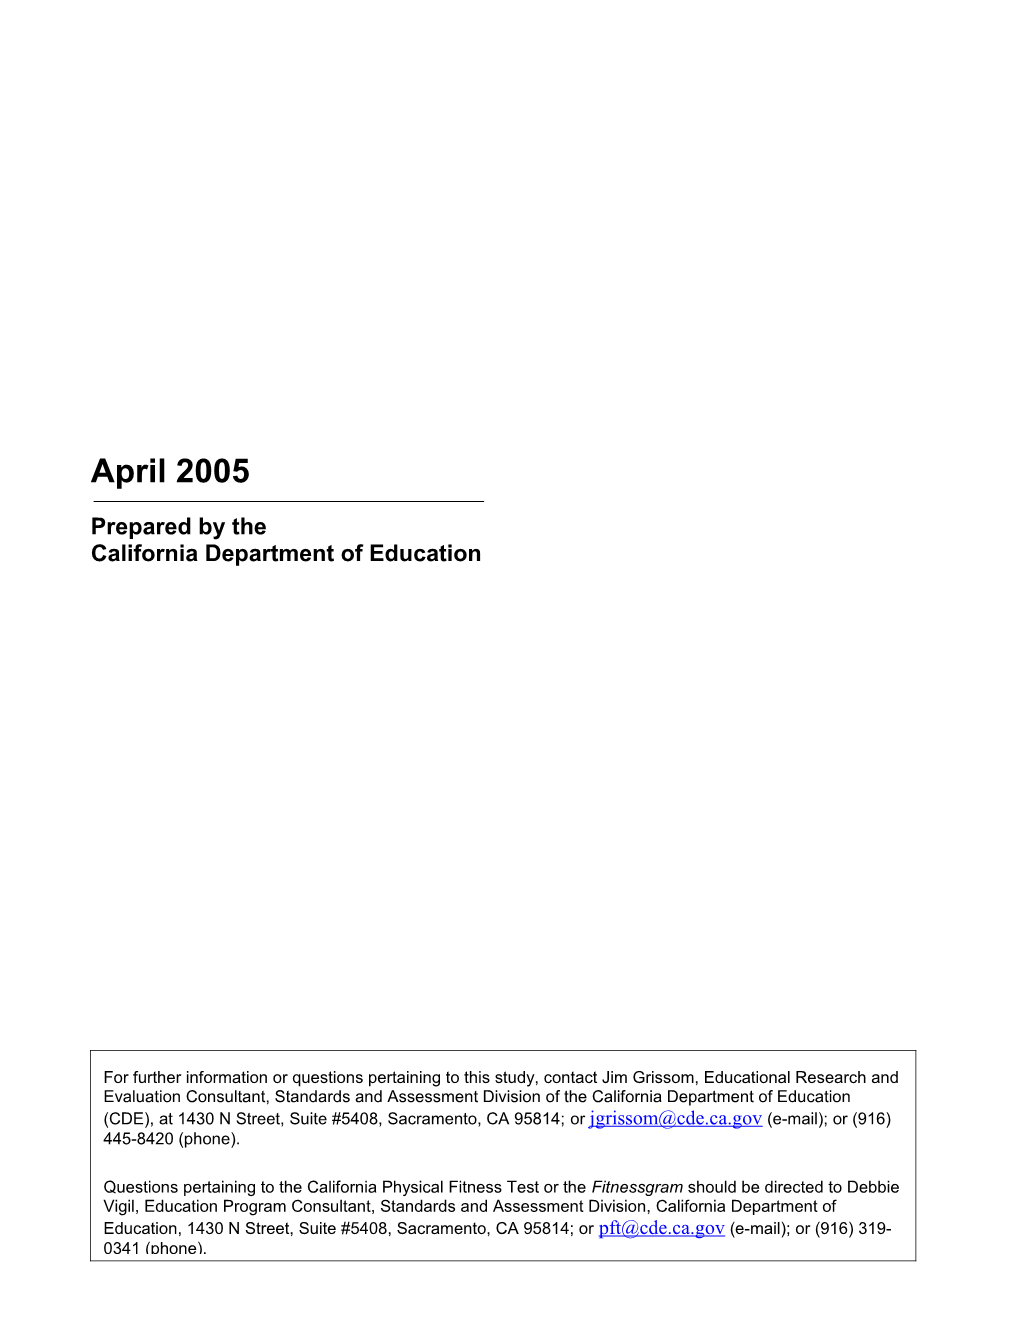 PFT 2004 Results - PFT (CA Dept of Education)